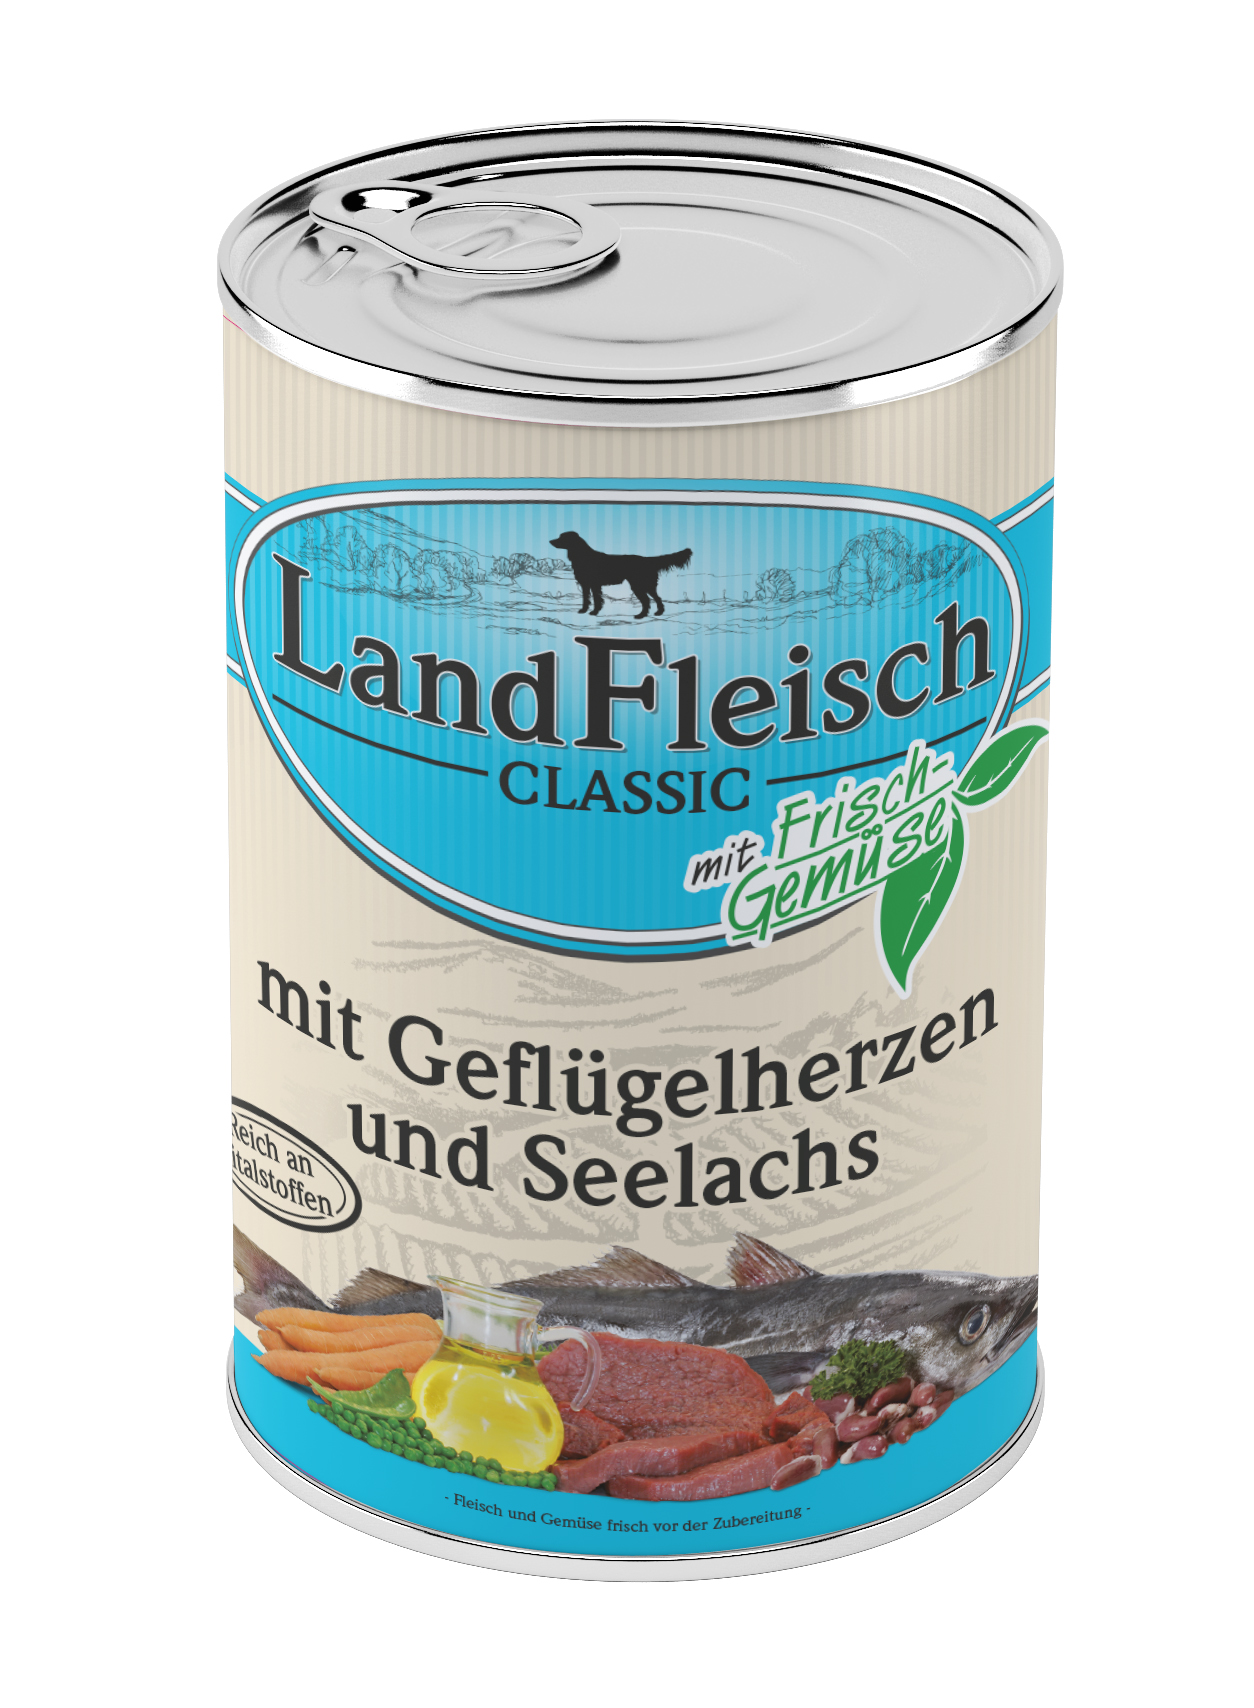 LandFleisch Classic Geflügelherzen & Seelachs mit Frischgemüse 400g